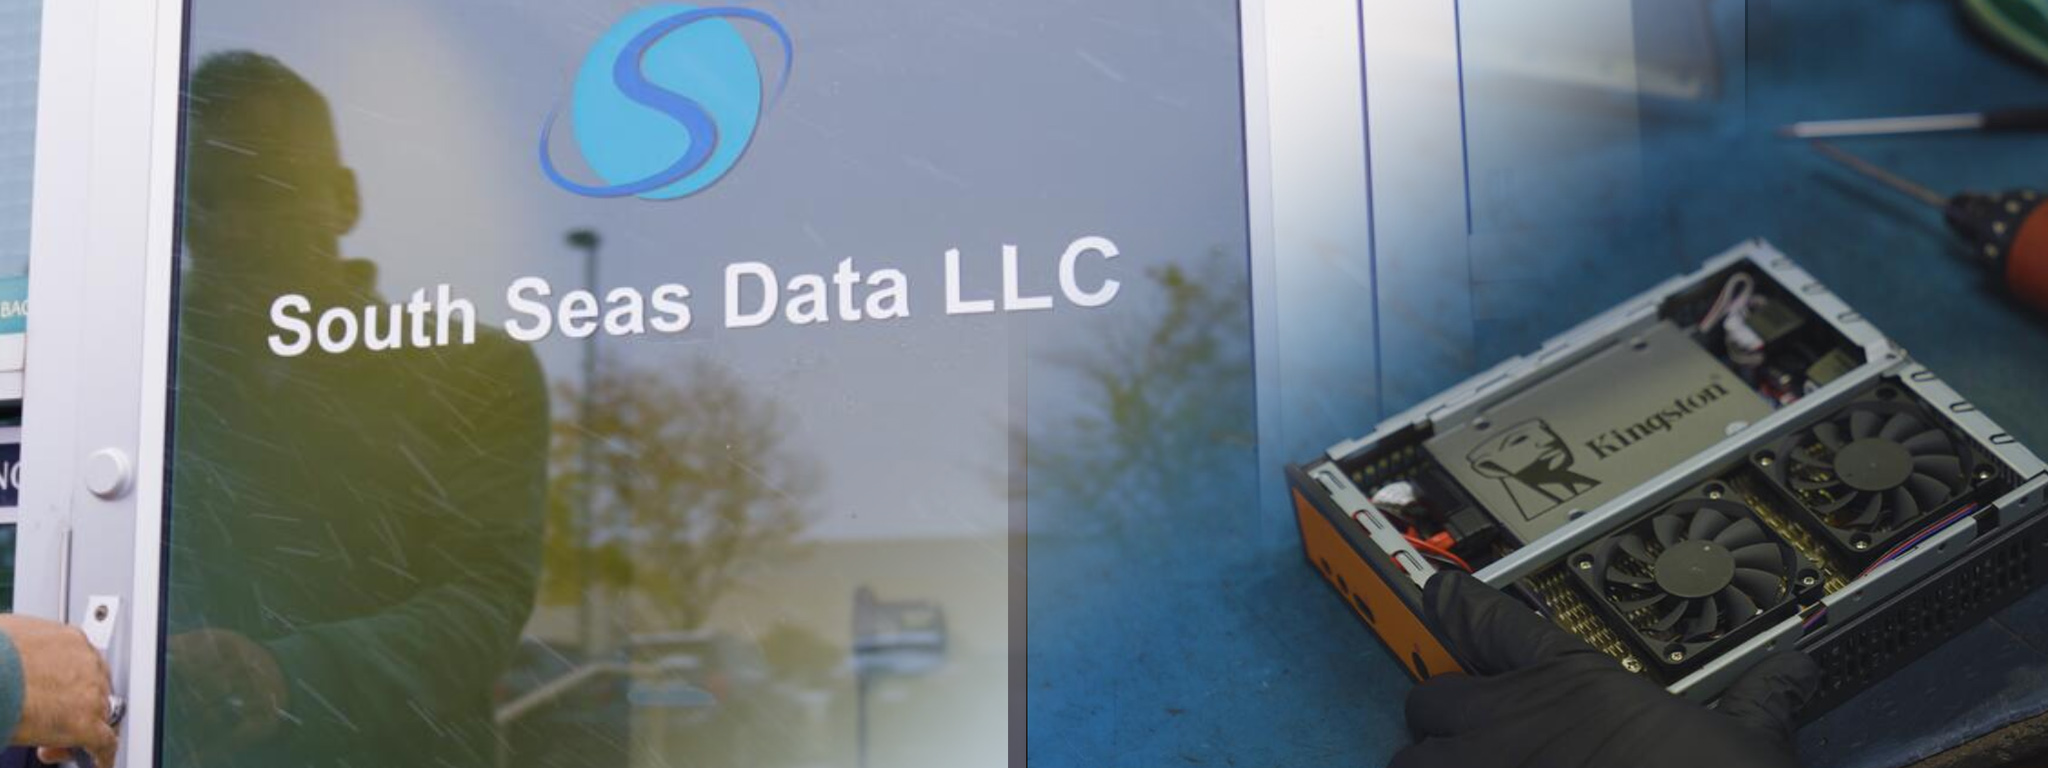 Вхідні двері штаб-квартири South Seas Data LLC й зображення комп’ютерної системи, в якій встановлено твердотільний накопичувач Kingston.